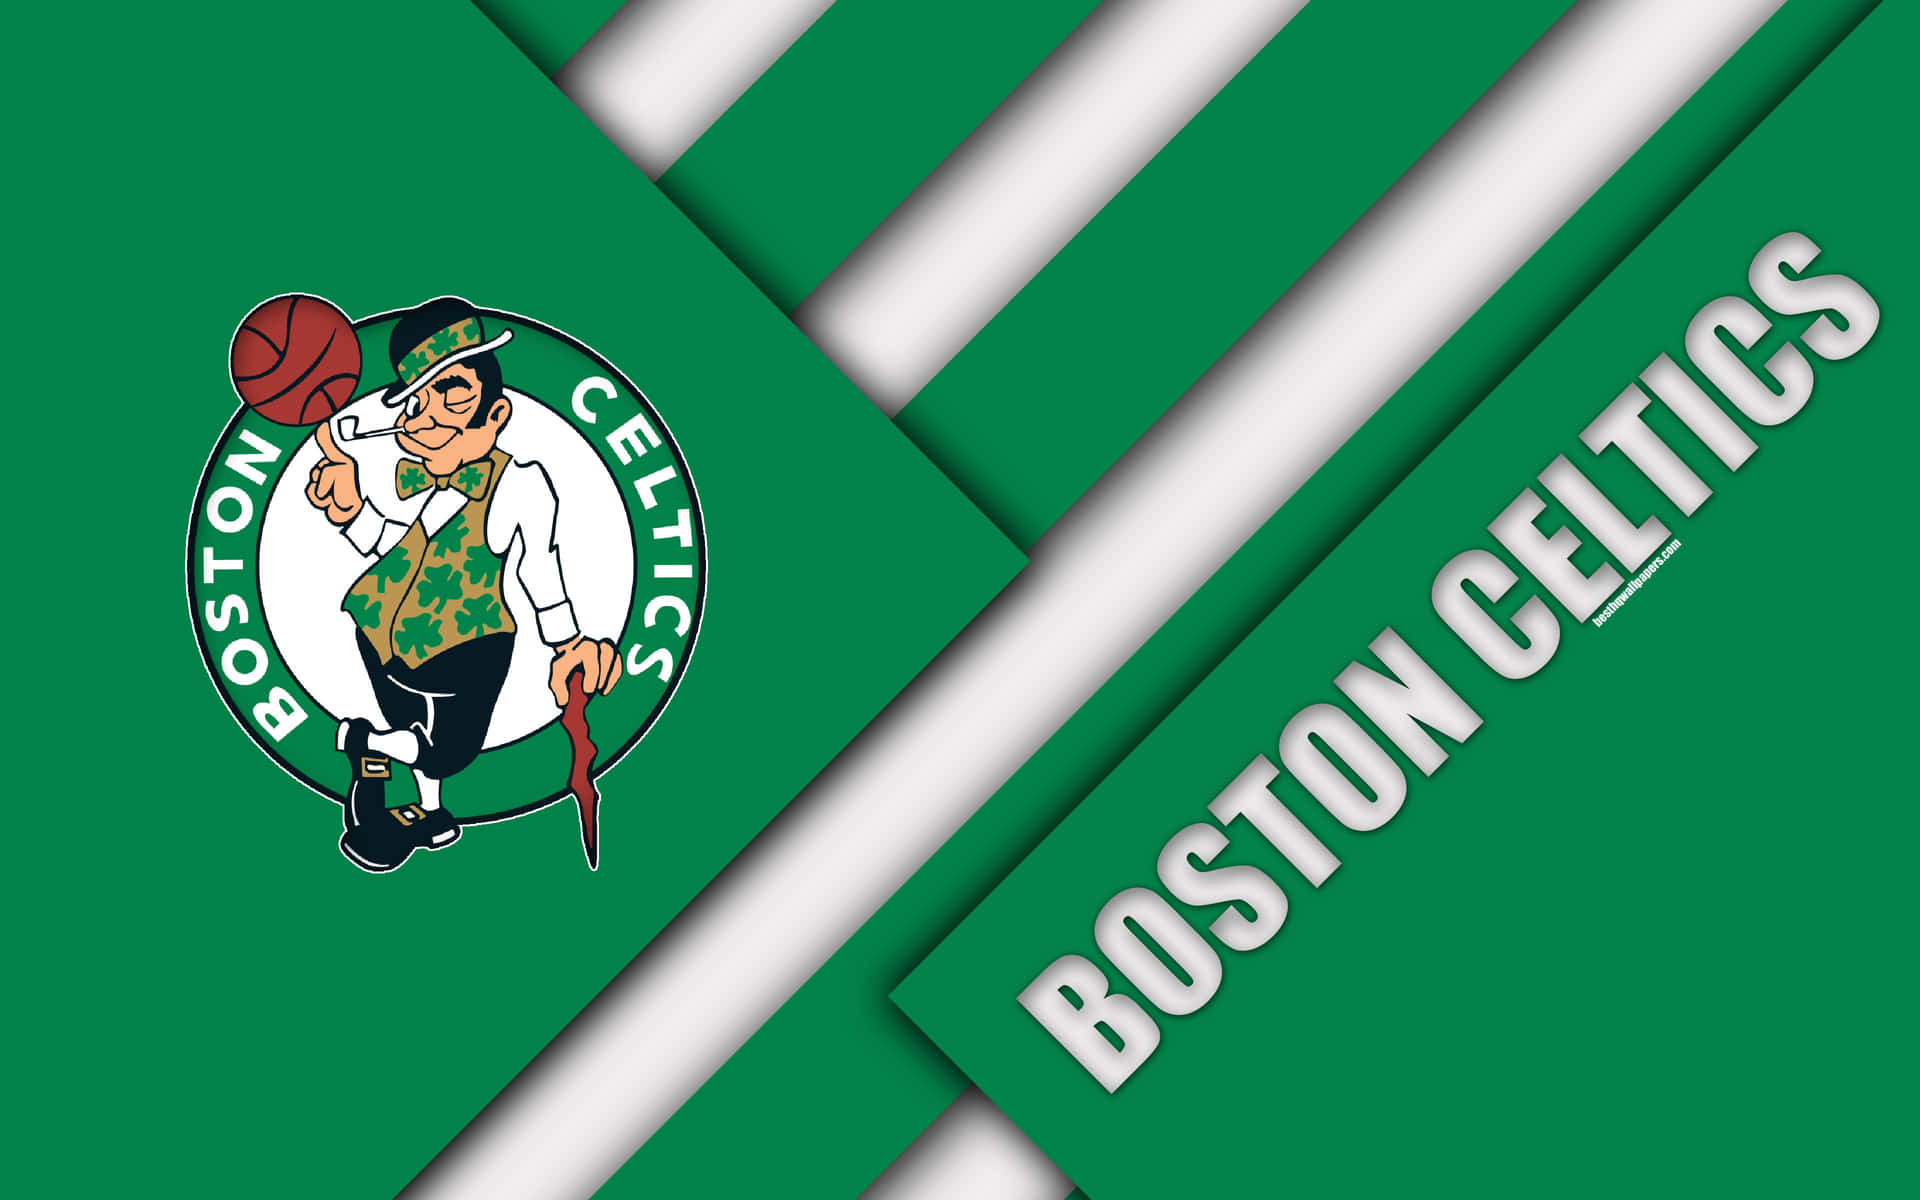 Logodos Celtics Em Gradientes De Verde E Branco. Papel de Parede